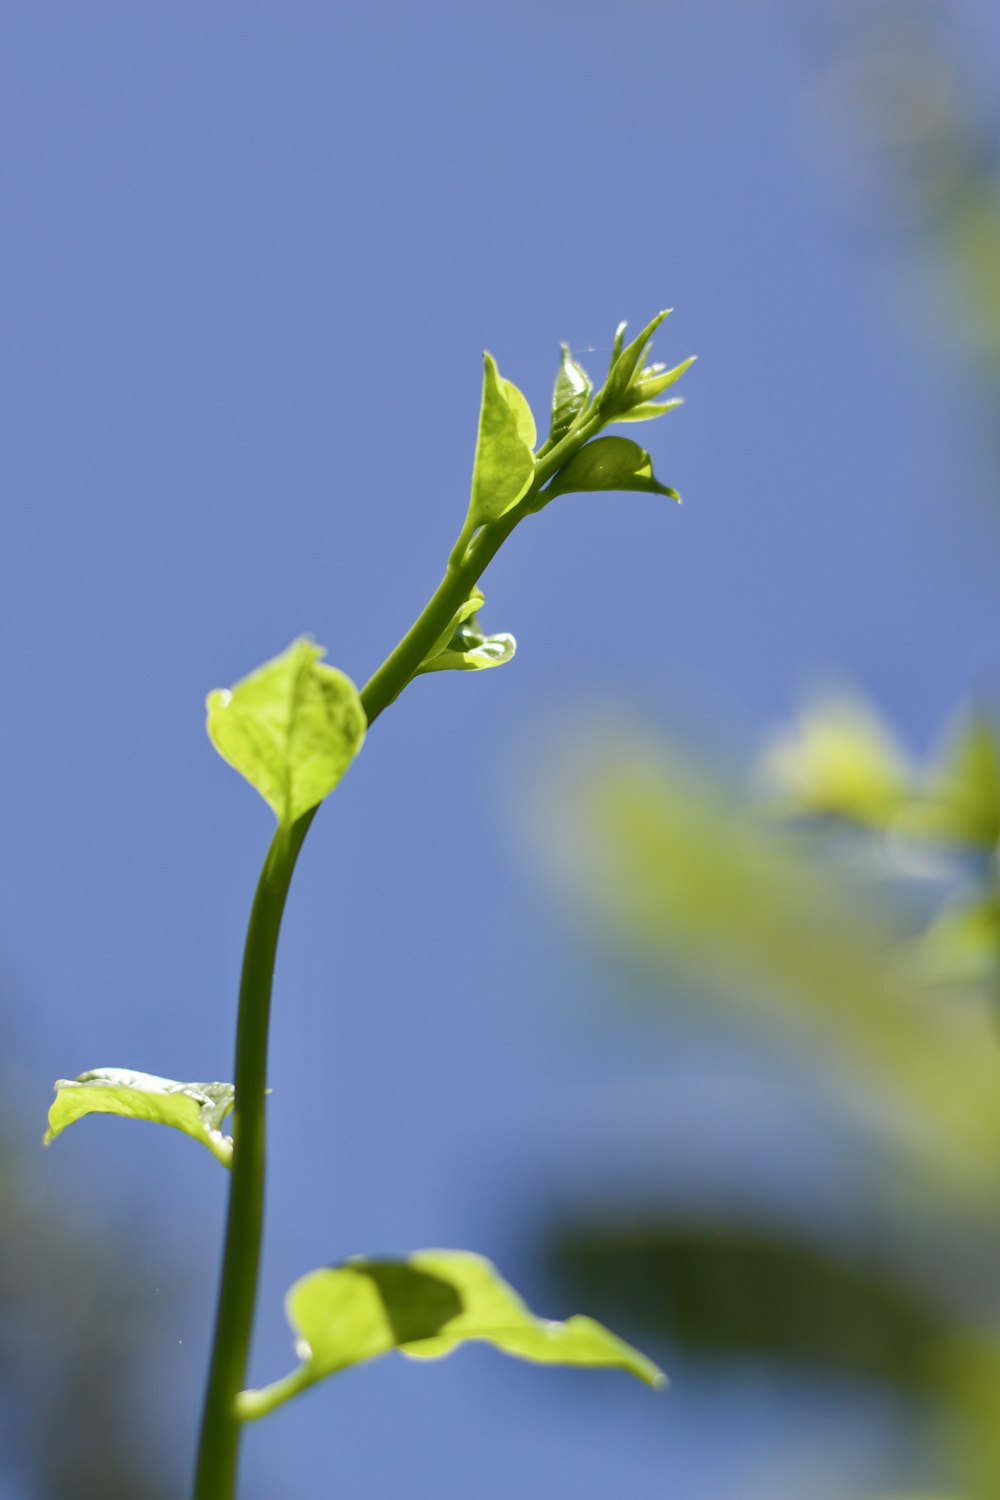 capullo de flor verde en fotografía de primer plano